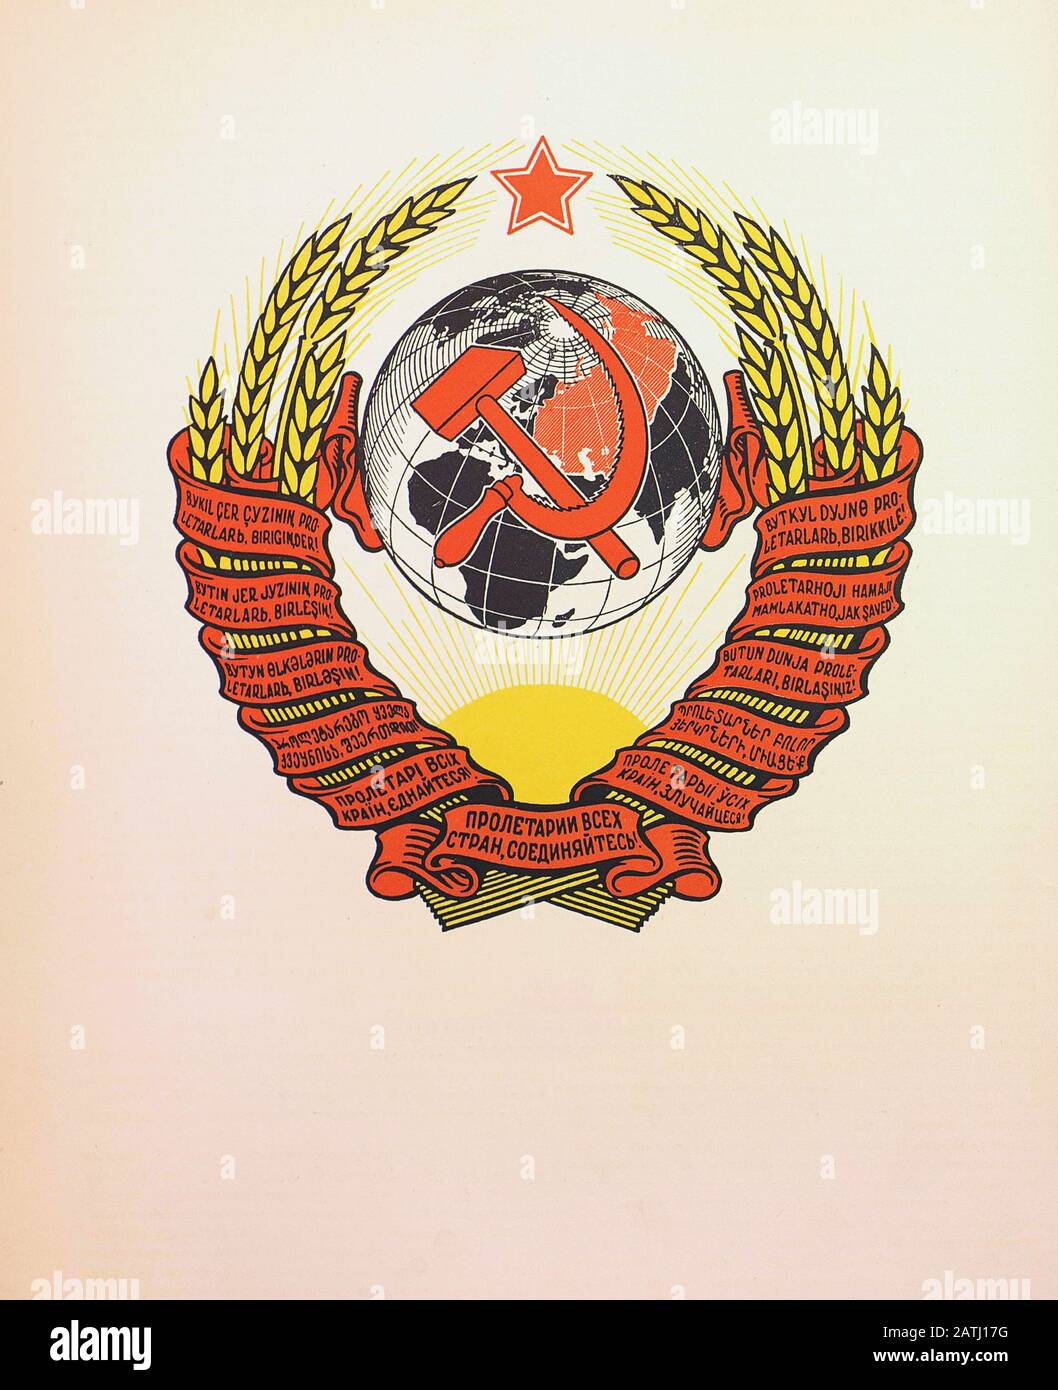 Сoat des armes de l'Union soviétique. Du livre de propagande soviétique. 1937 Banque D'Images